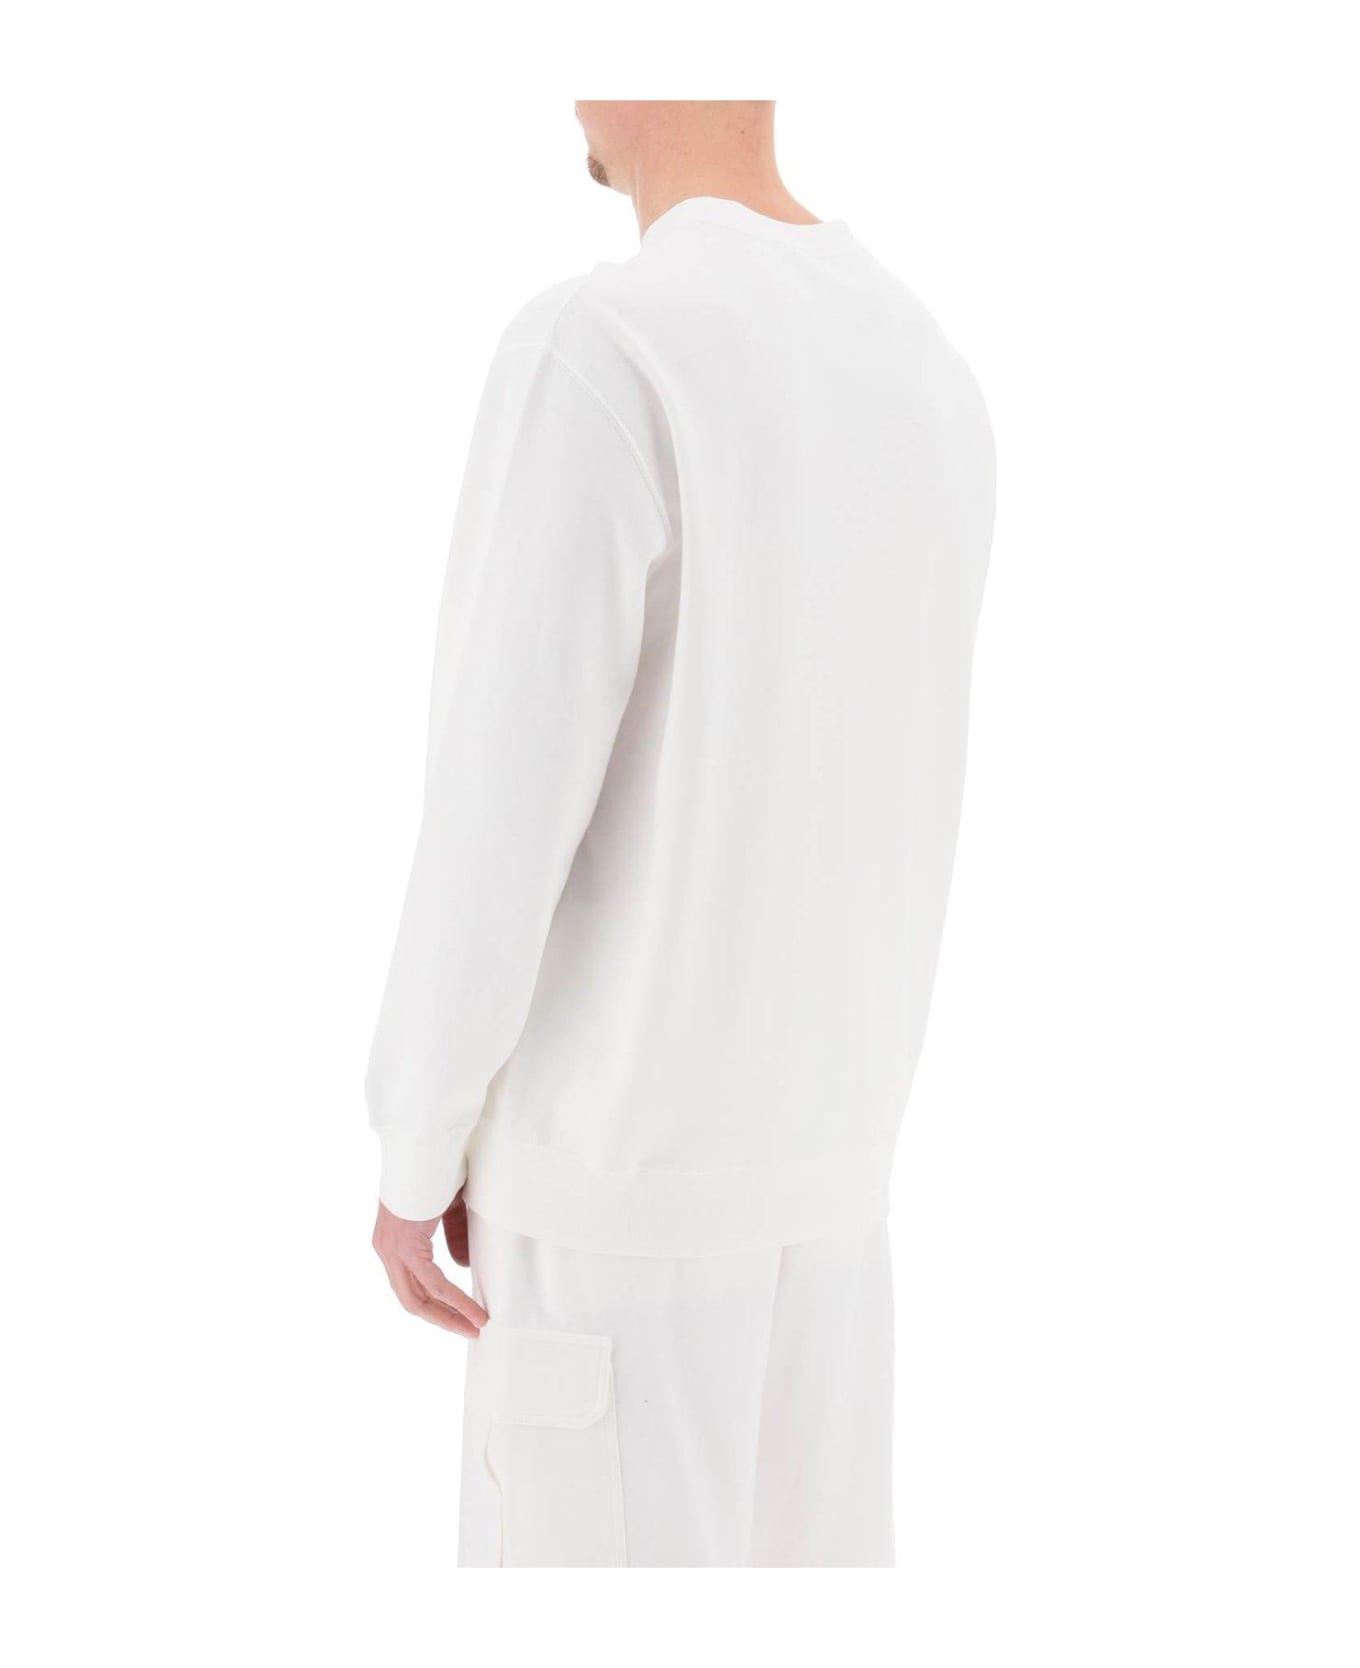 Brunello Cucinelli Logo Embroidered Crewneck Sweatshirt - off white+sabbia フリース